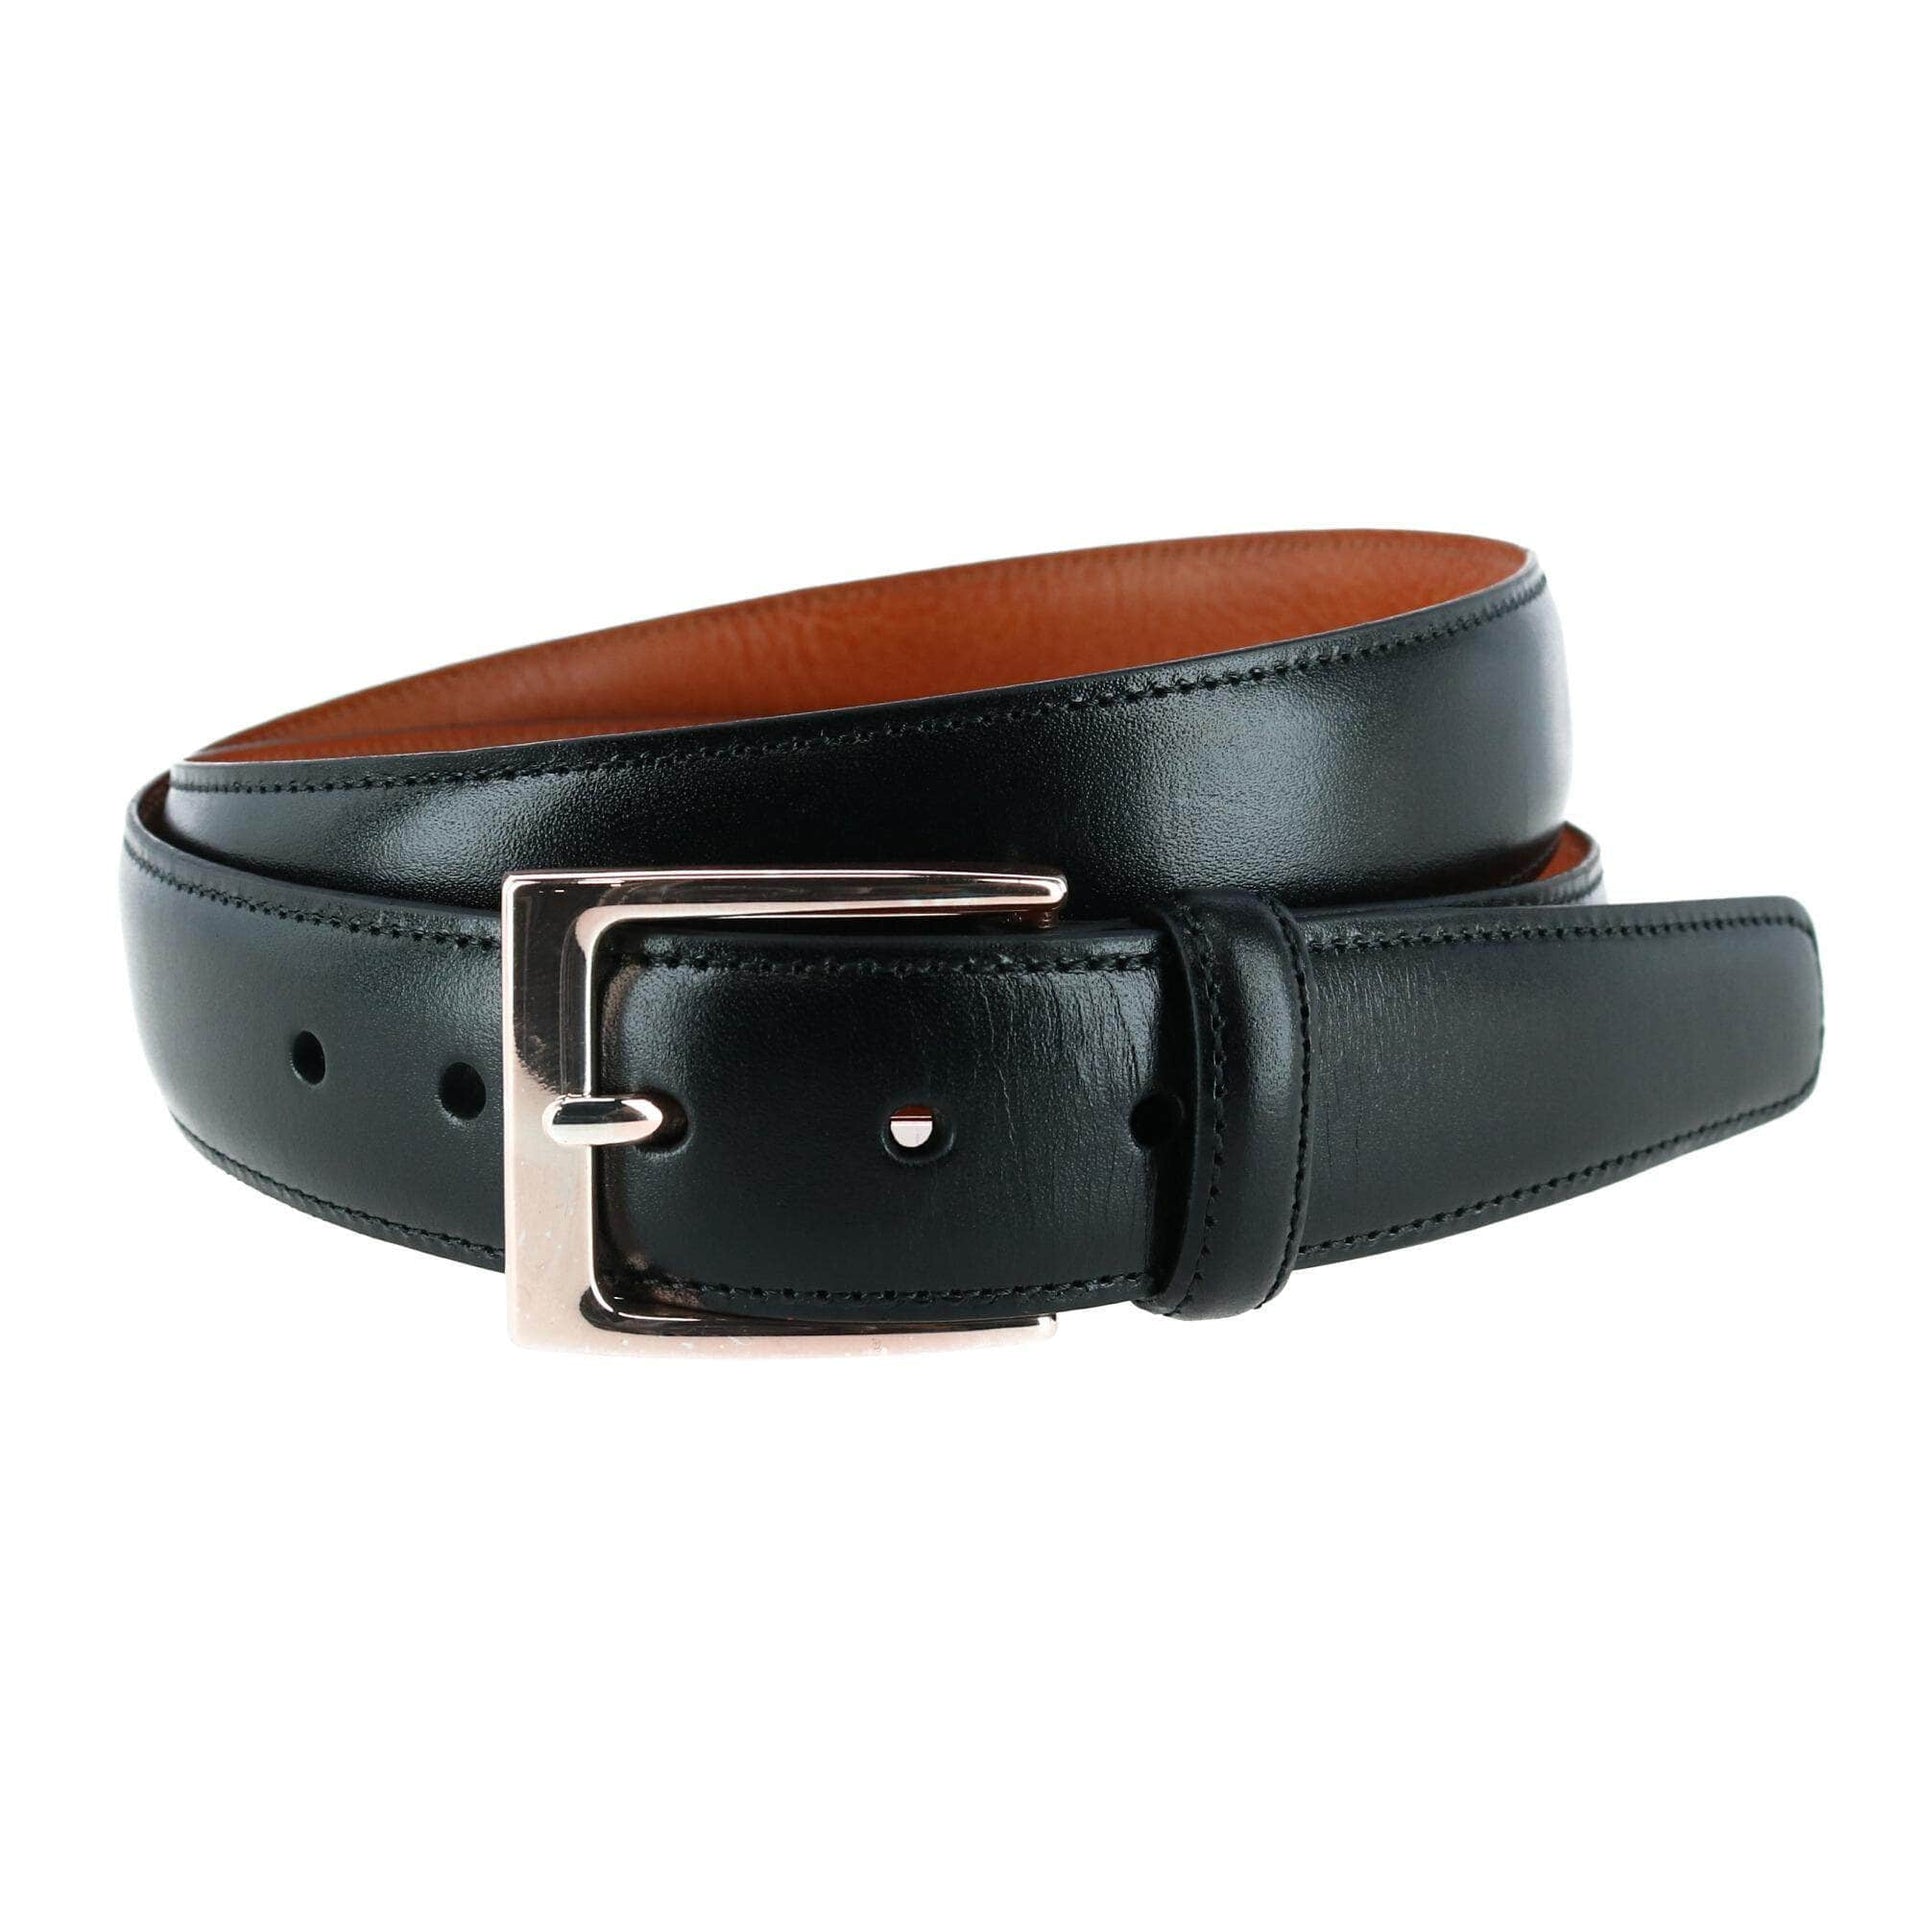 Standard 30 mm Black Leather Belt